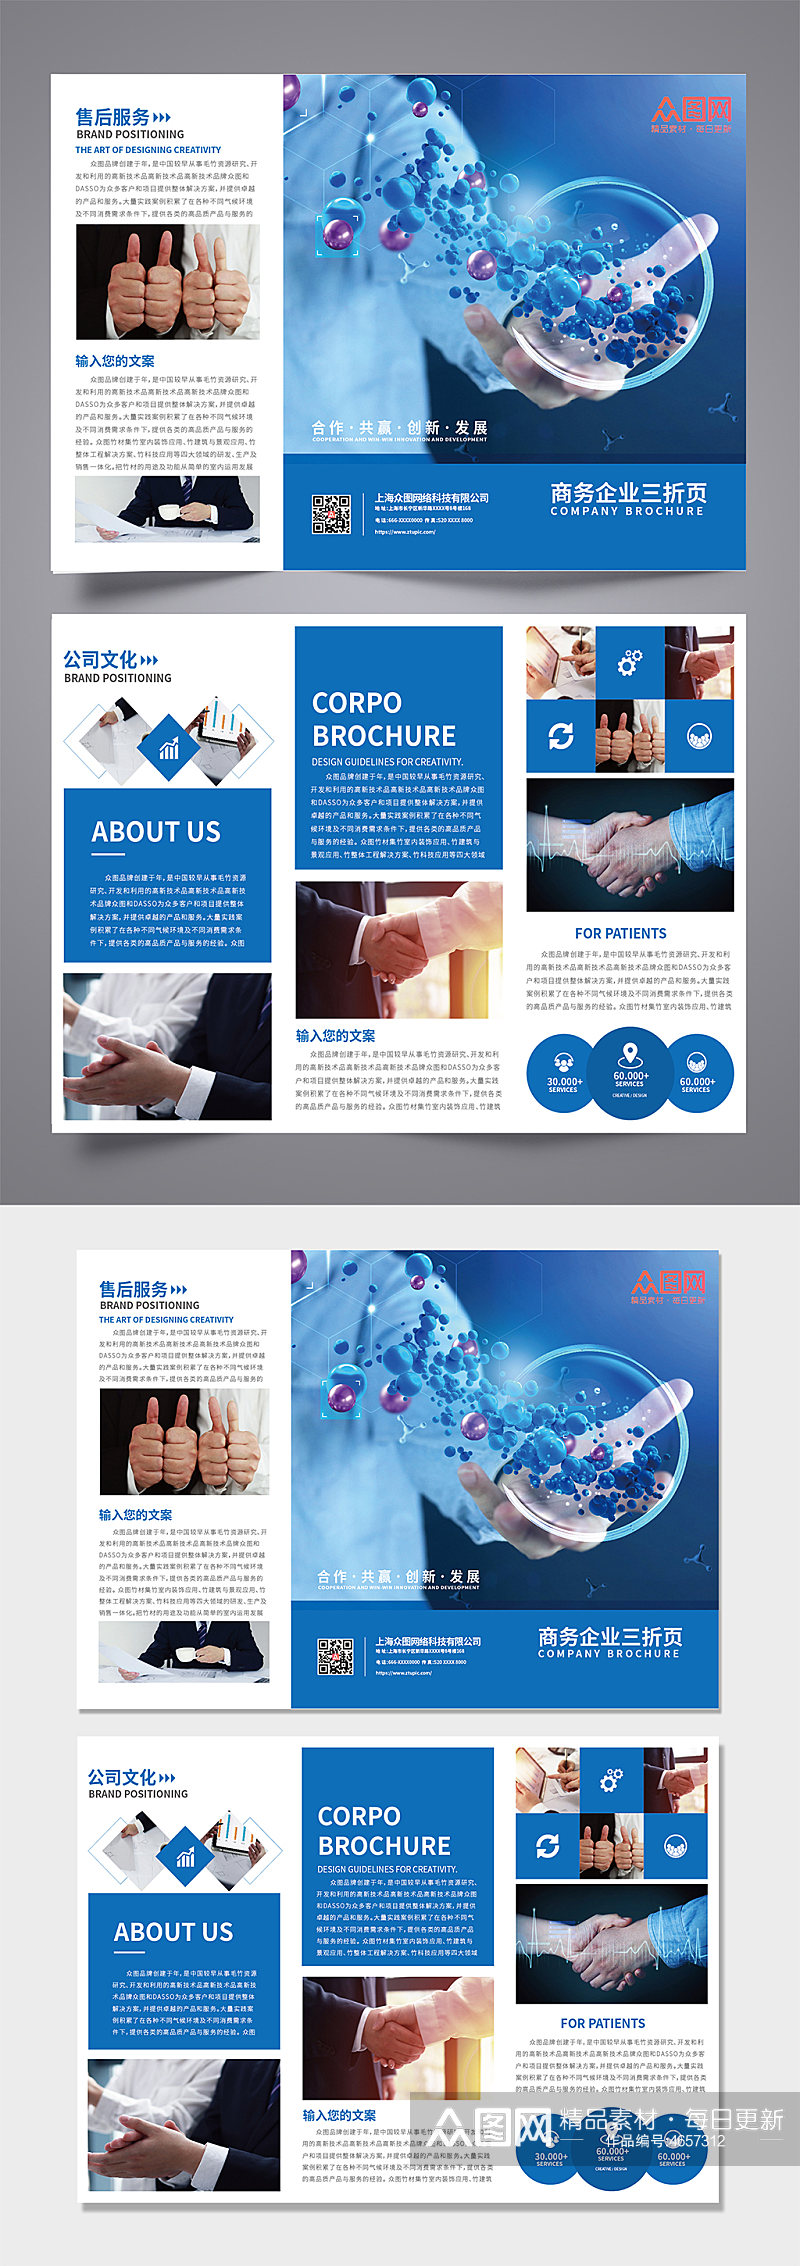 蓝色科技感公司企业宣传三折页招商手册宣传单素材